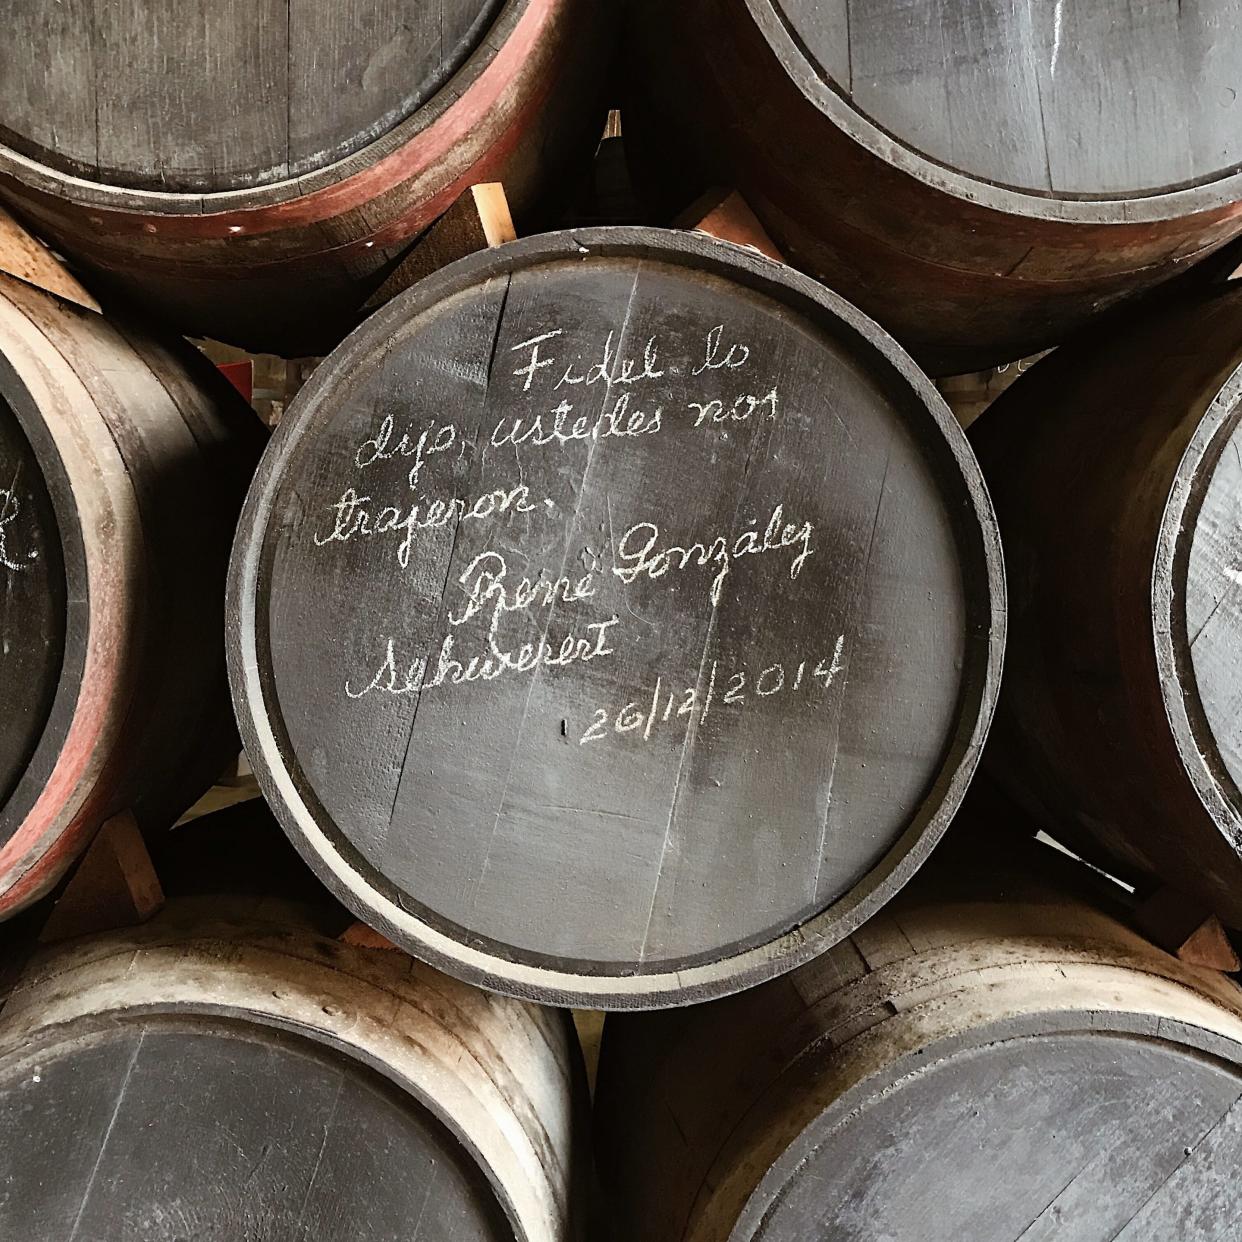 Barrels at the Havana Club distillery at Santa Cruz del Norte - Copyright 2018. All rights reserved.